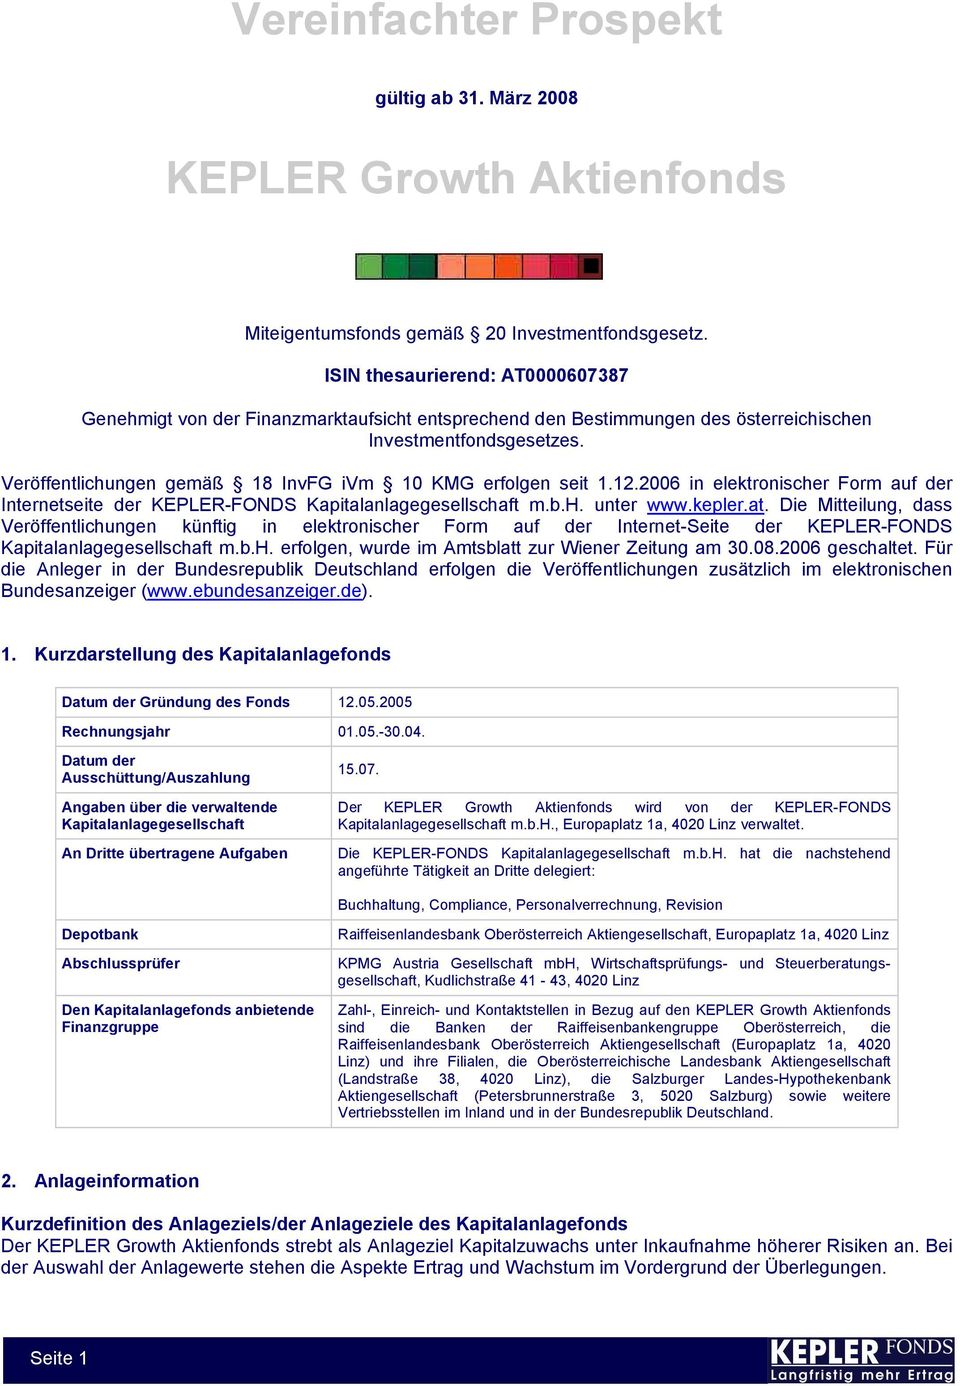 Veröffentlichungen gemäß 18 InvFG ivm 10 KMG erfolgen seit 1.12.2006 in elektronischer Form auf der Internetseite der KEPLER-FONDS Kapitalanlagegesellschaft m.b.h. unter www.kepler.at.